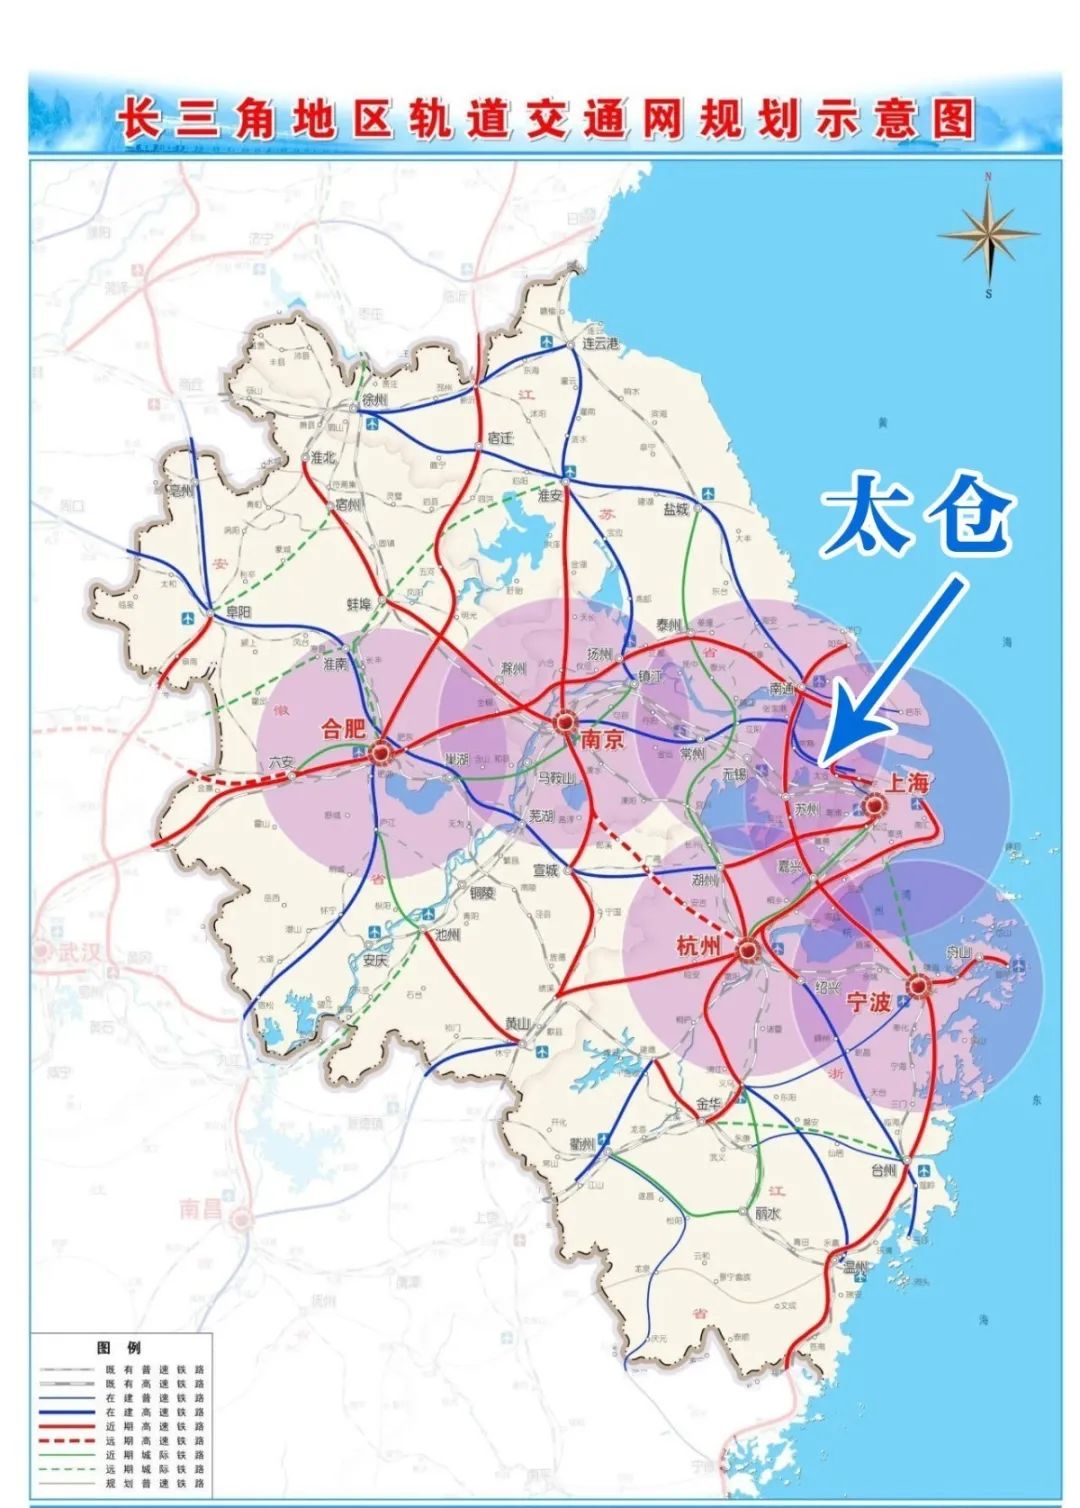 上海嘉闵线(含北延伸)工程最引人瞩目的当然是其中,这些工程中建设